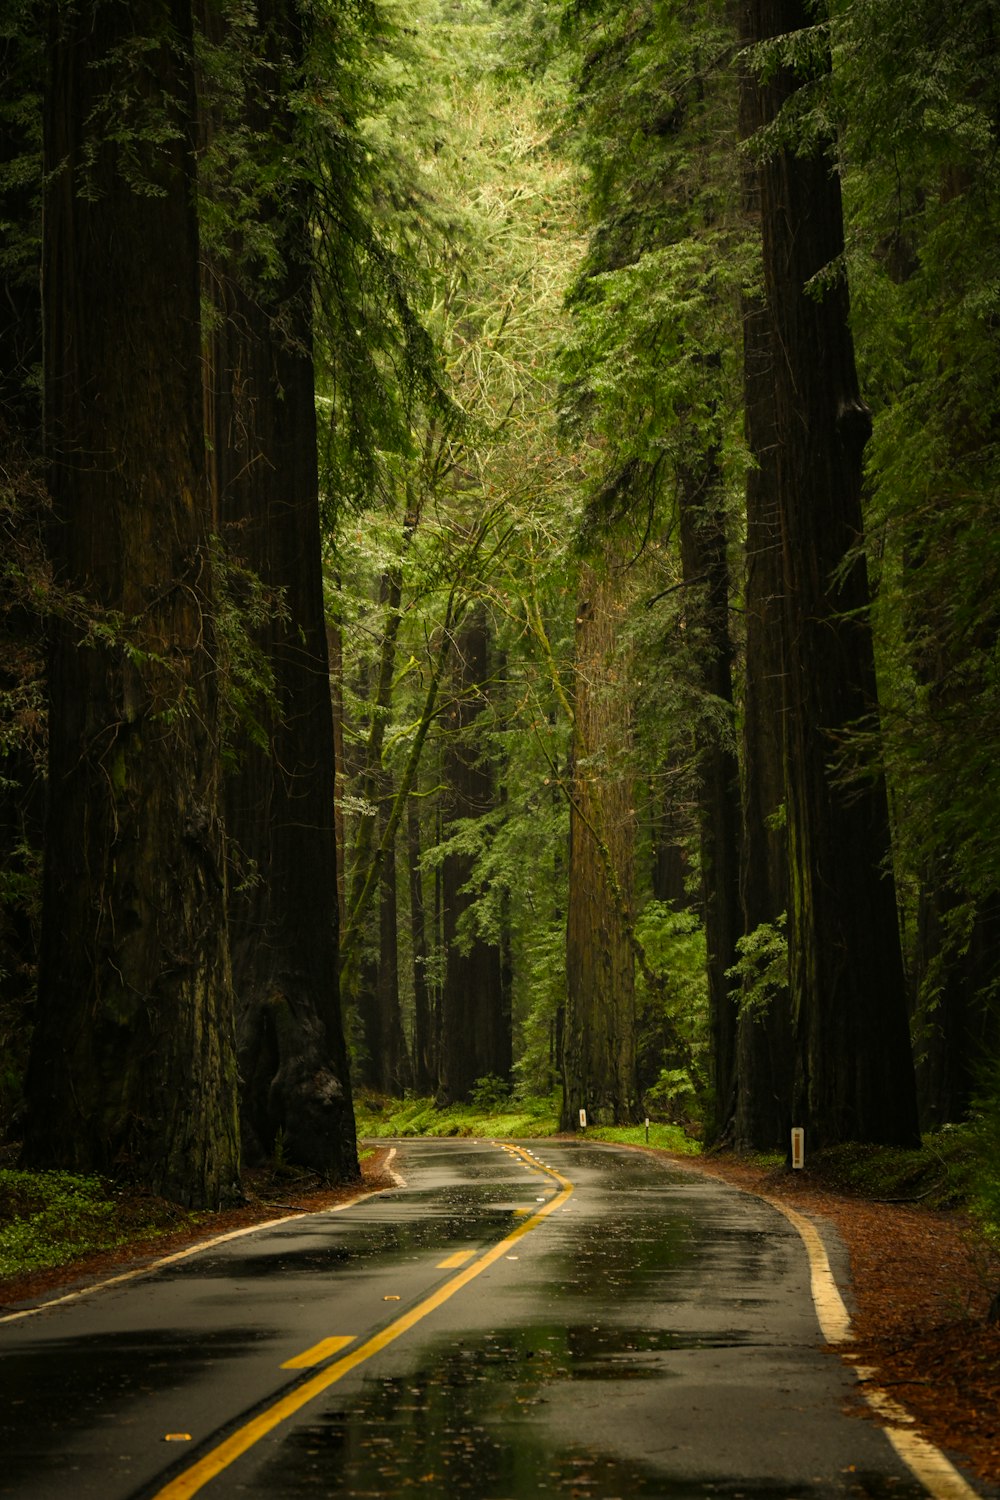 uma estrada no meio de uma floresta com árvores altas